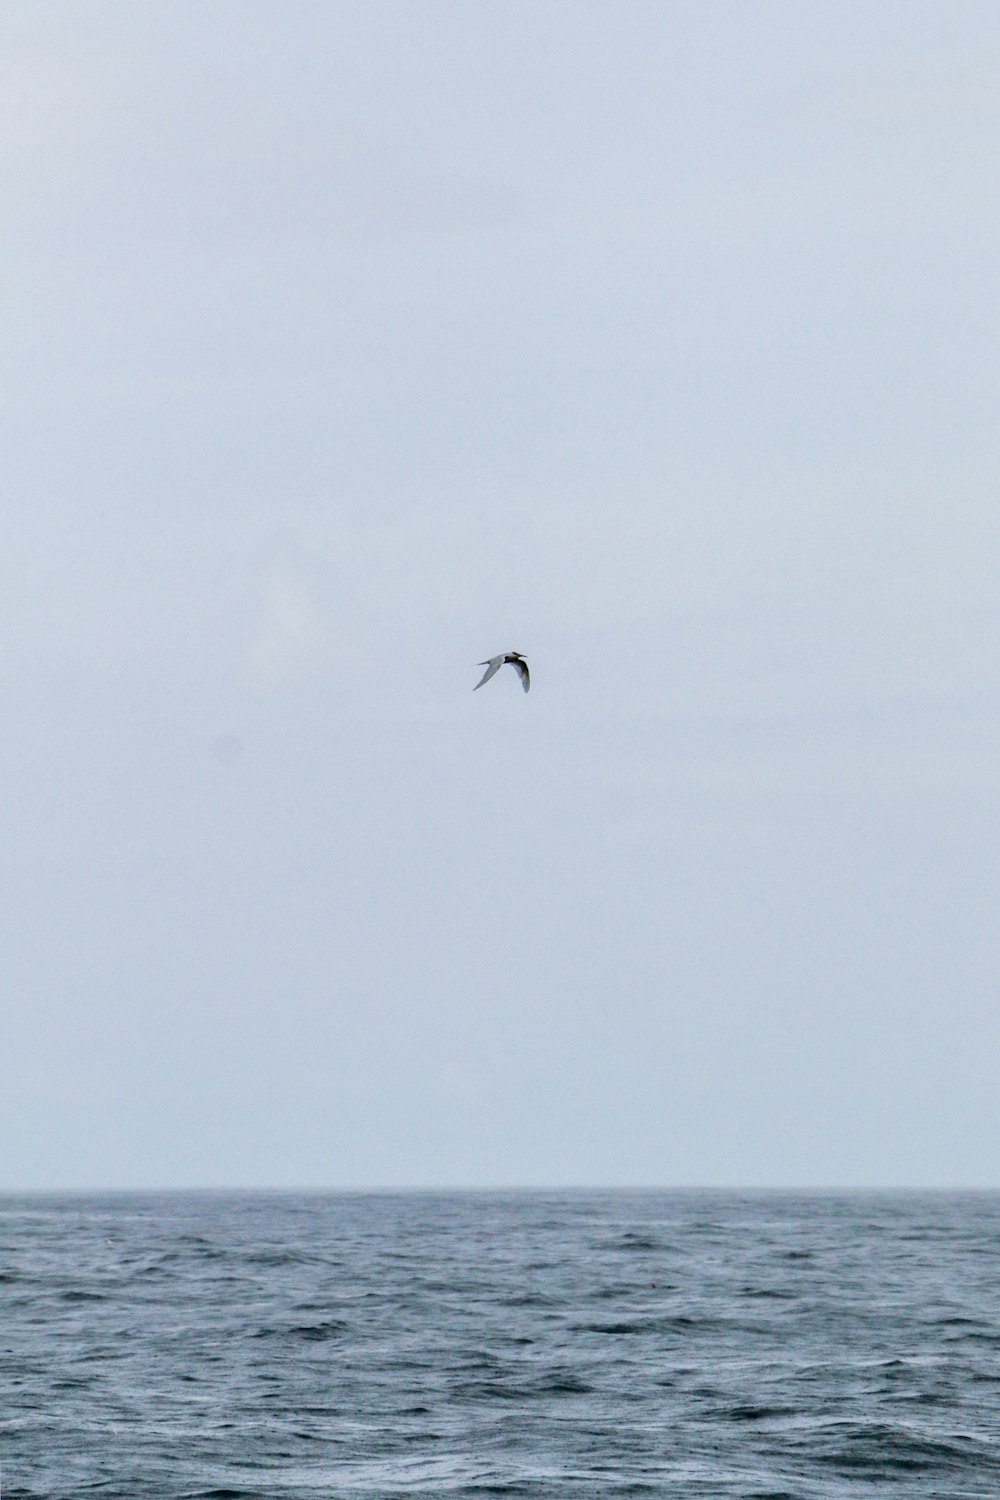 Un oiseau survolant l’océan par temps nuageux